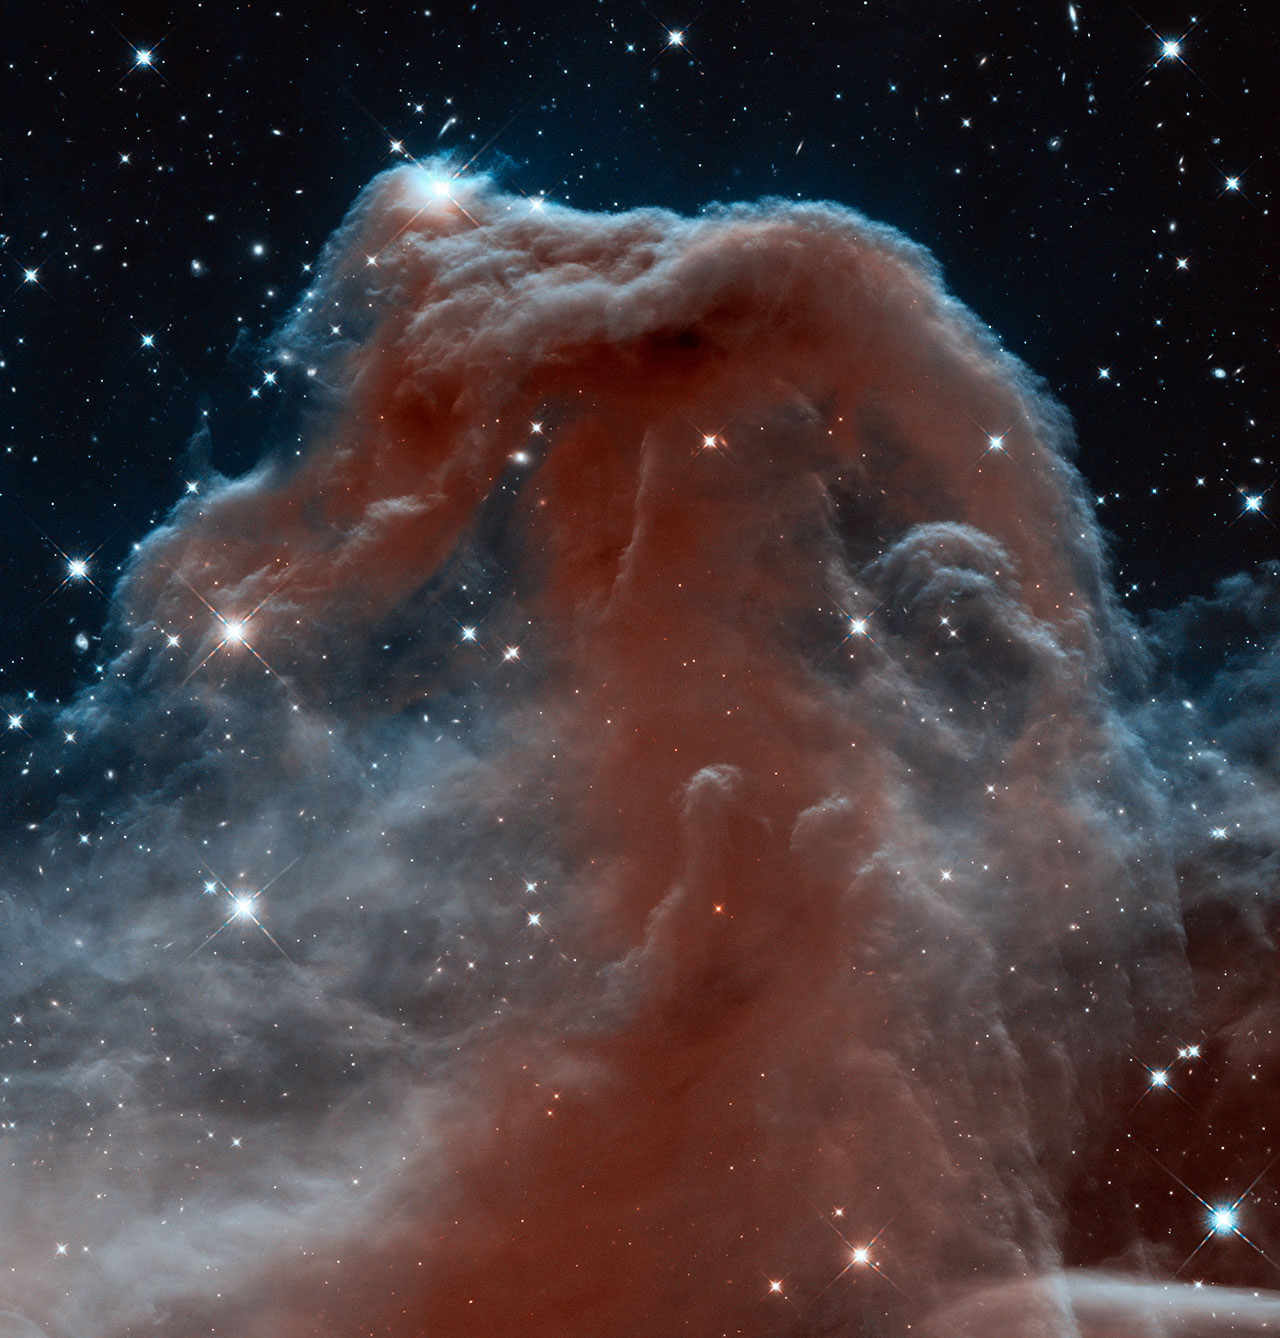 ハッブル望遠鏡が撮影した馬頭星雲